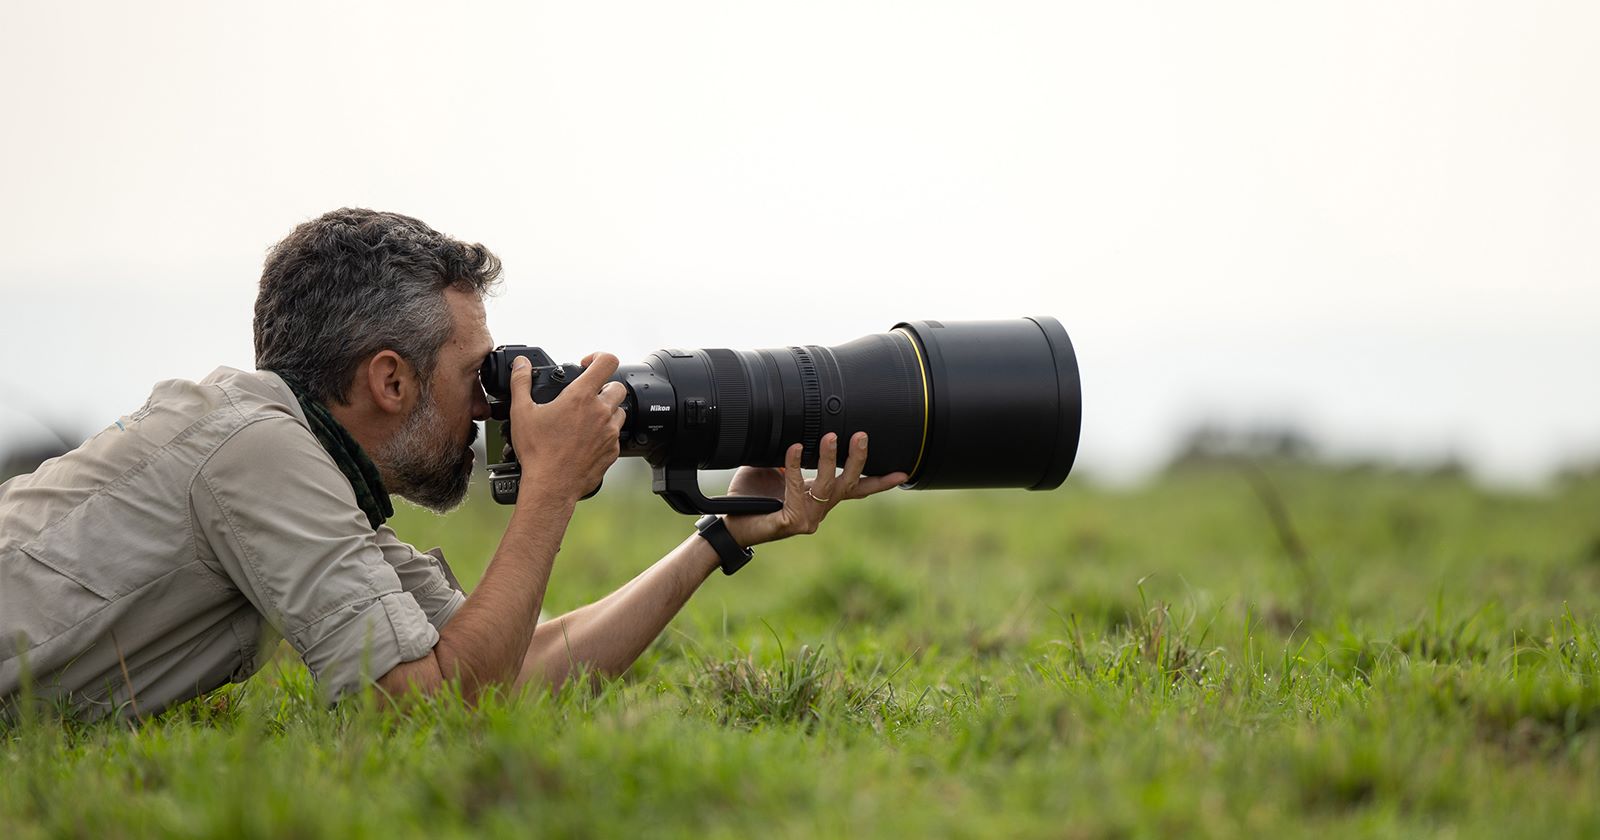 Nikon ra mắt ống kính 400mm F2.8 TC VR S dành cho full frame ngàm Z trị giá 14,000 USD